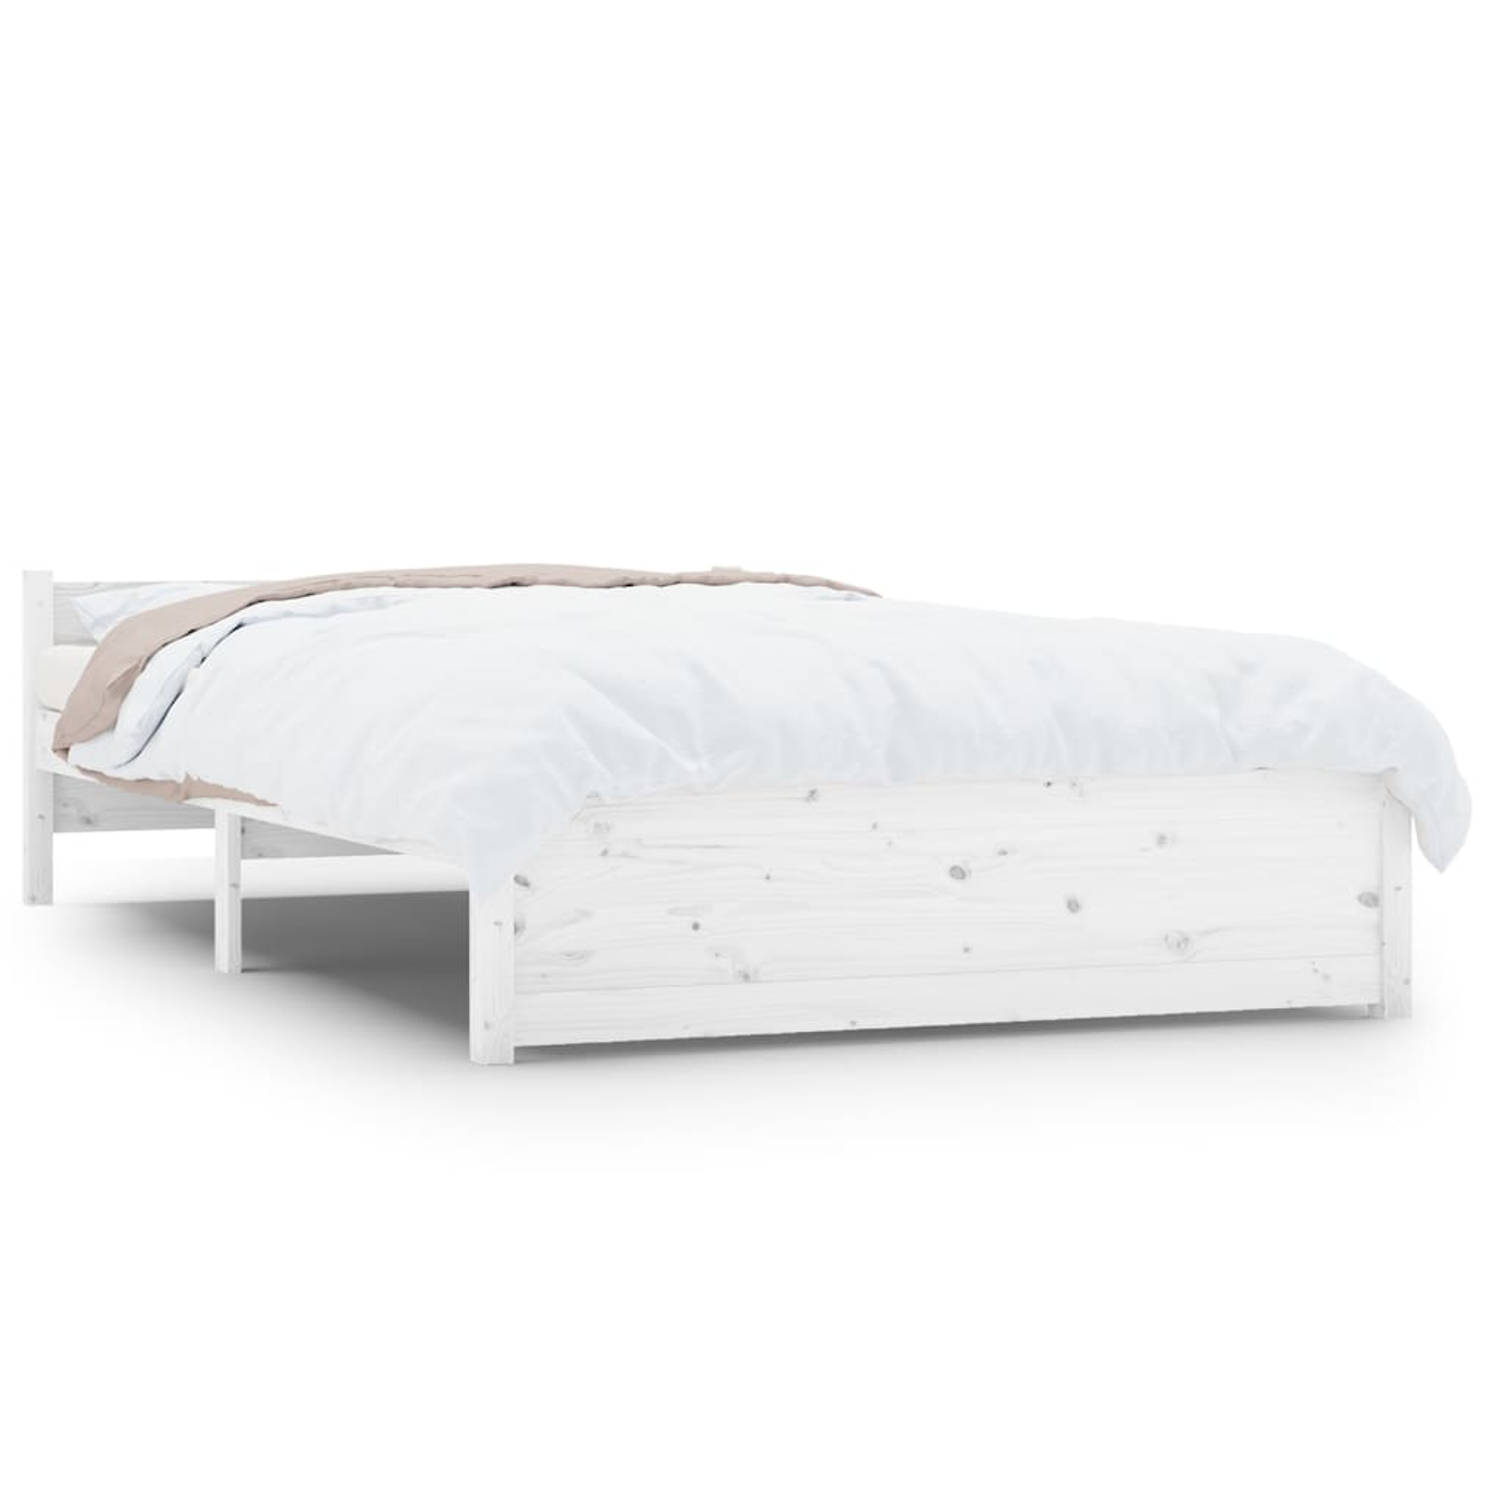 The Living Store Bedframe massief hout wit 140x200 cm - Bedframe - Bedframes - Bed - Bedbodem - Ledikant - Bed Frame - Massief Houten Bedframe - Slaapmeubel - Tweepersoonsbed - Bed